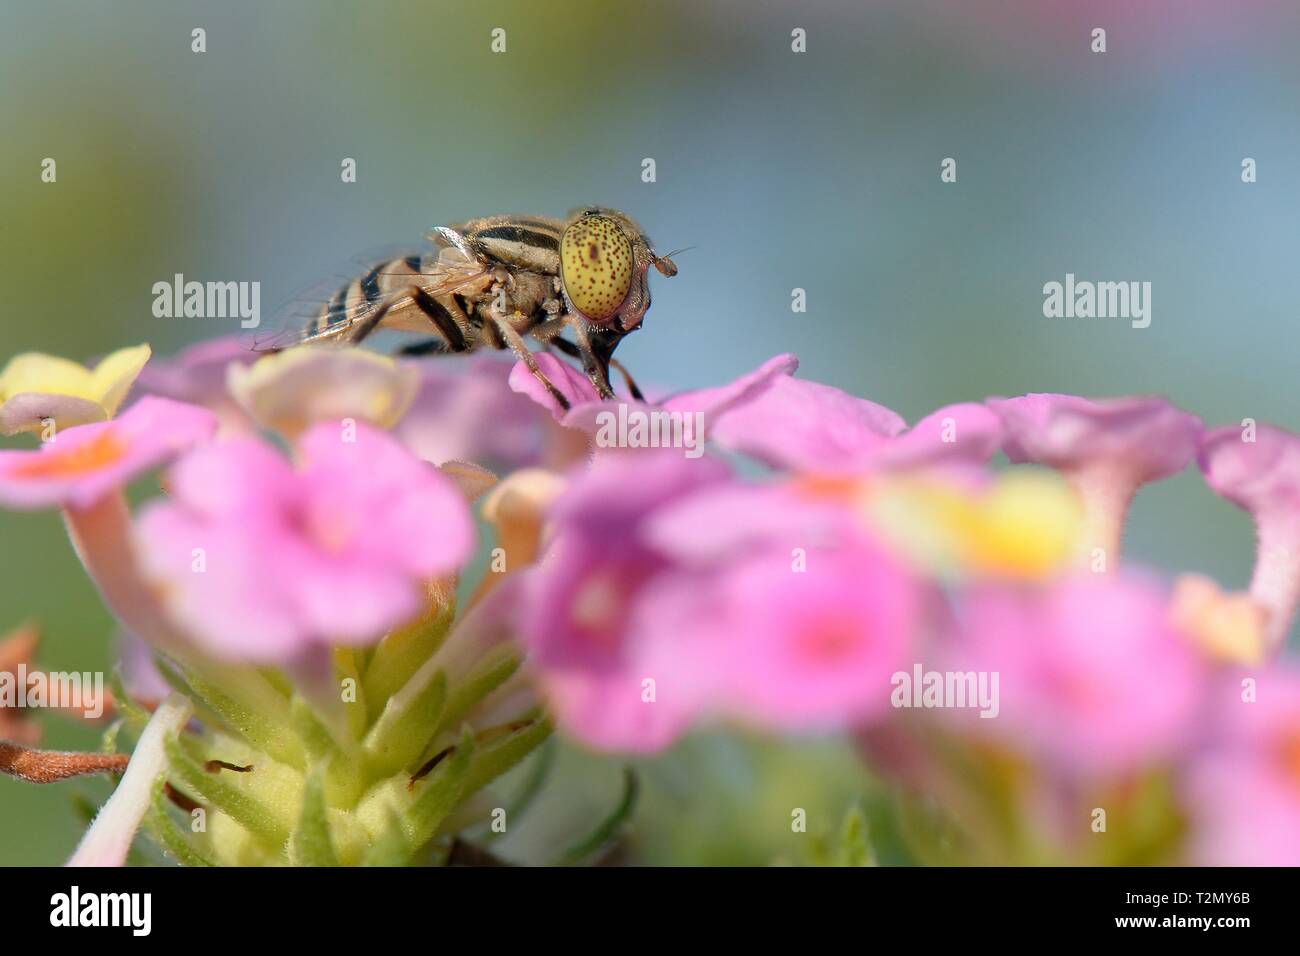 Spotted-eye hoverfly (Eristalinus megacephalus de nectar sur les fleurs) Lantana, Mallorca, Espagne, août. Banque D'Images